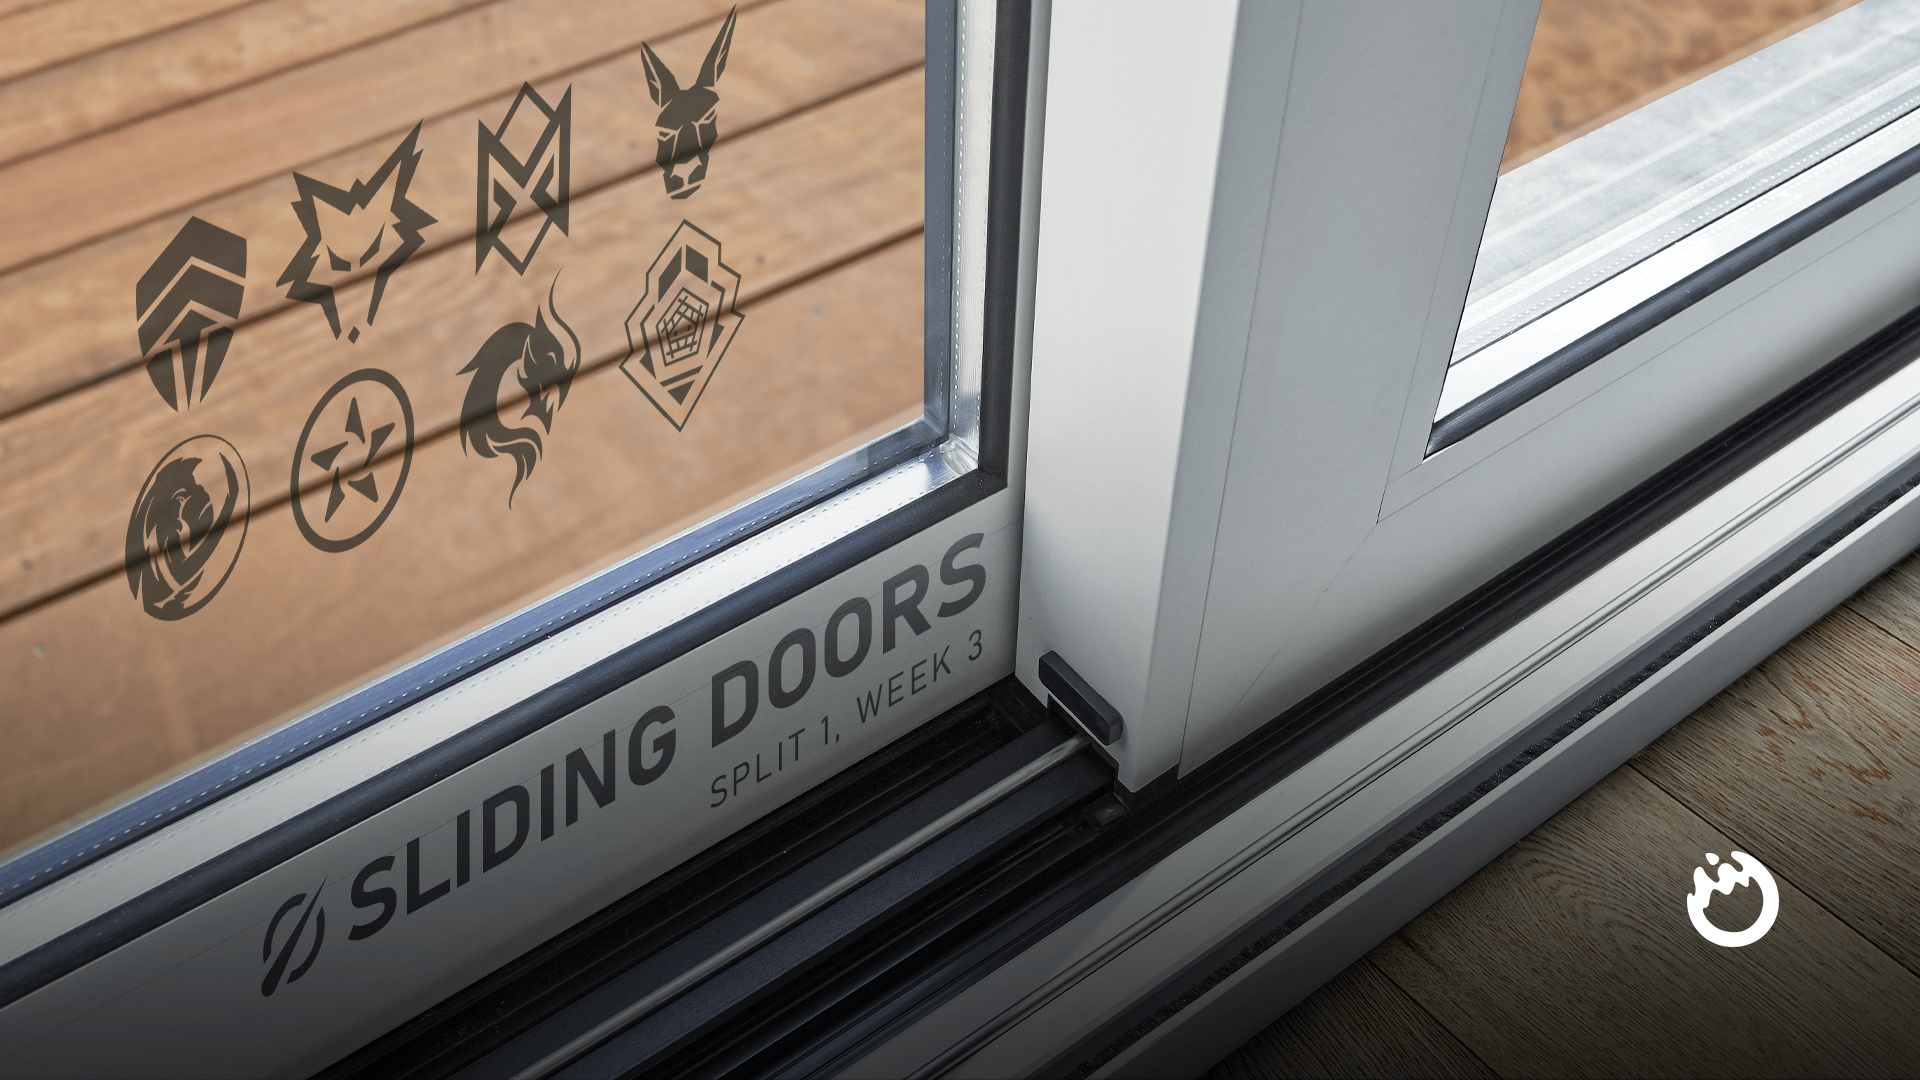 Sliding Doors: LCO 2022 Split 1, Week 3